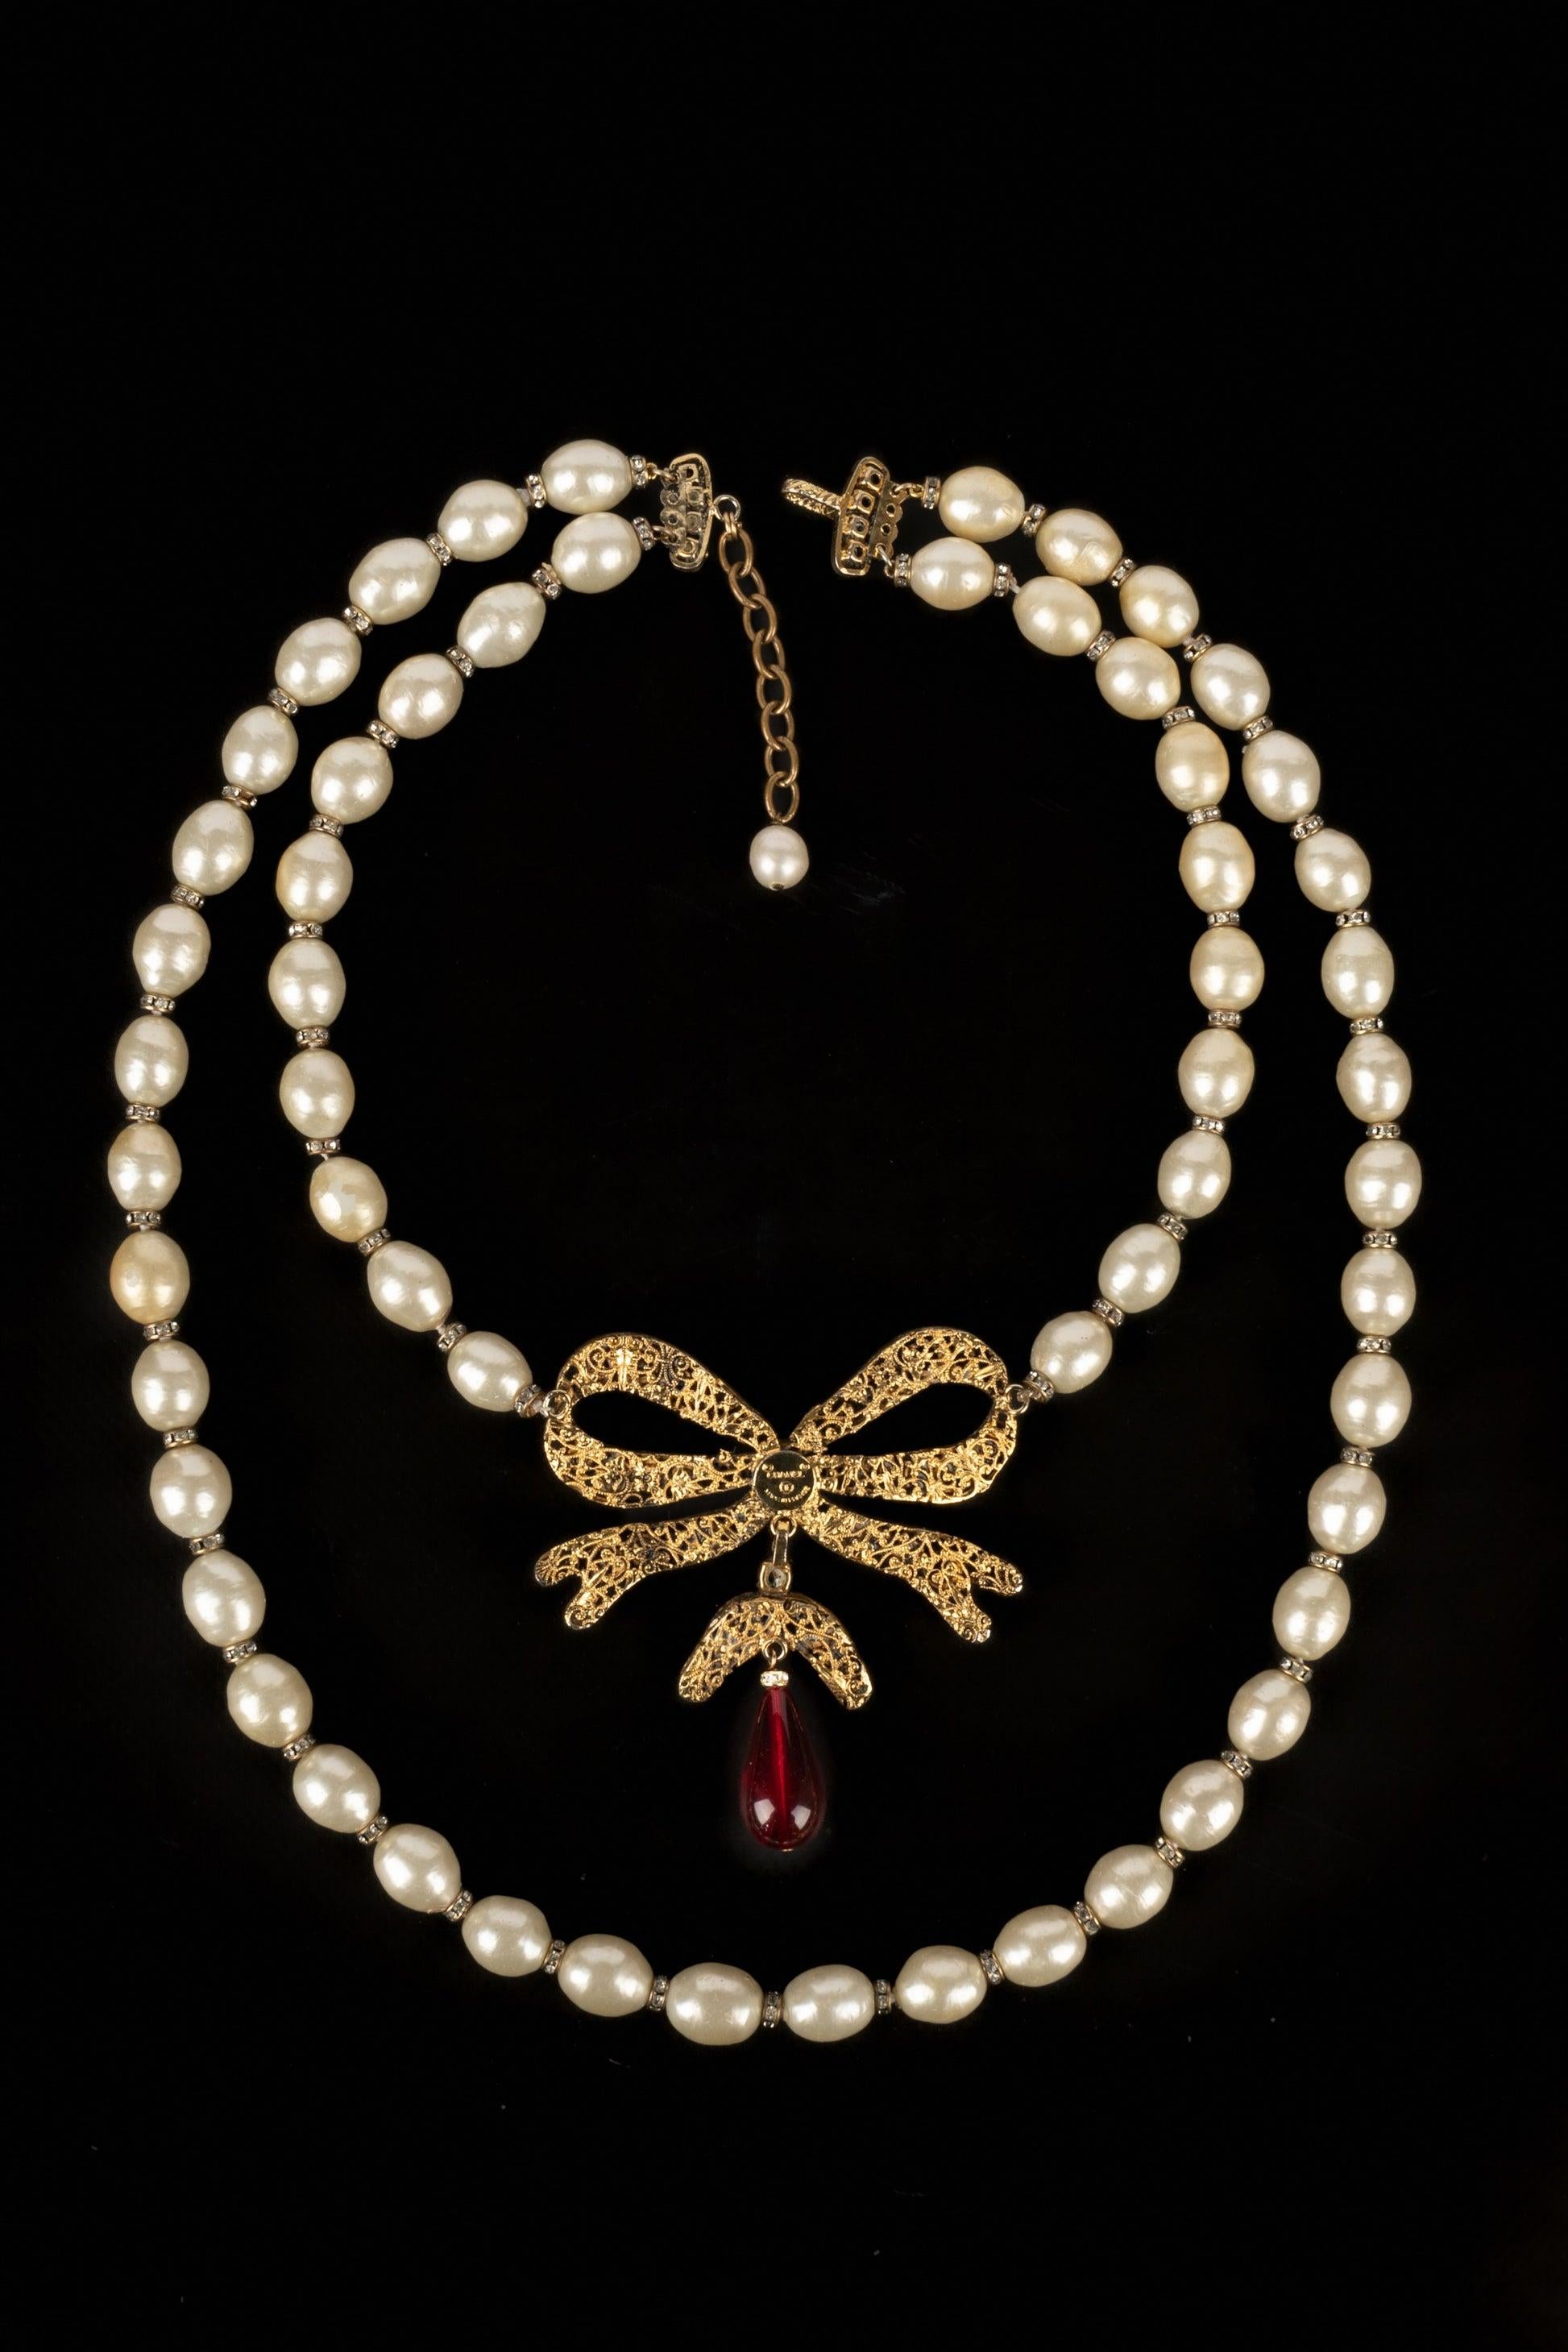 Chanel - (Made in France) Goldenes Metallcollier mit Perlen, Strasssteinen und roter Glaspaste. Bei einigen Perlen gibt es Bereiche ohne das perlige Material.

Zusätzliche Informationen:
Zustand: Guter Zustand
Abmessungen: Länge: von 50 cm bis 55